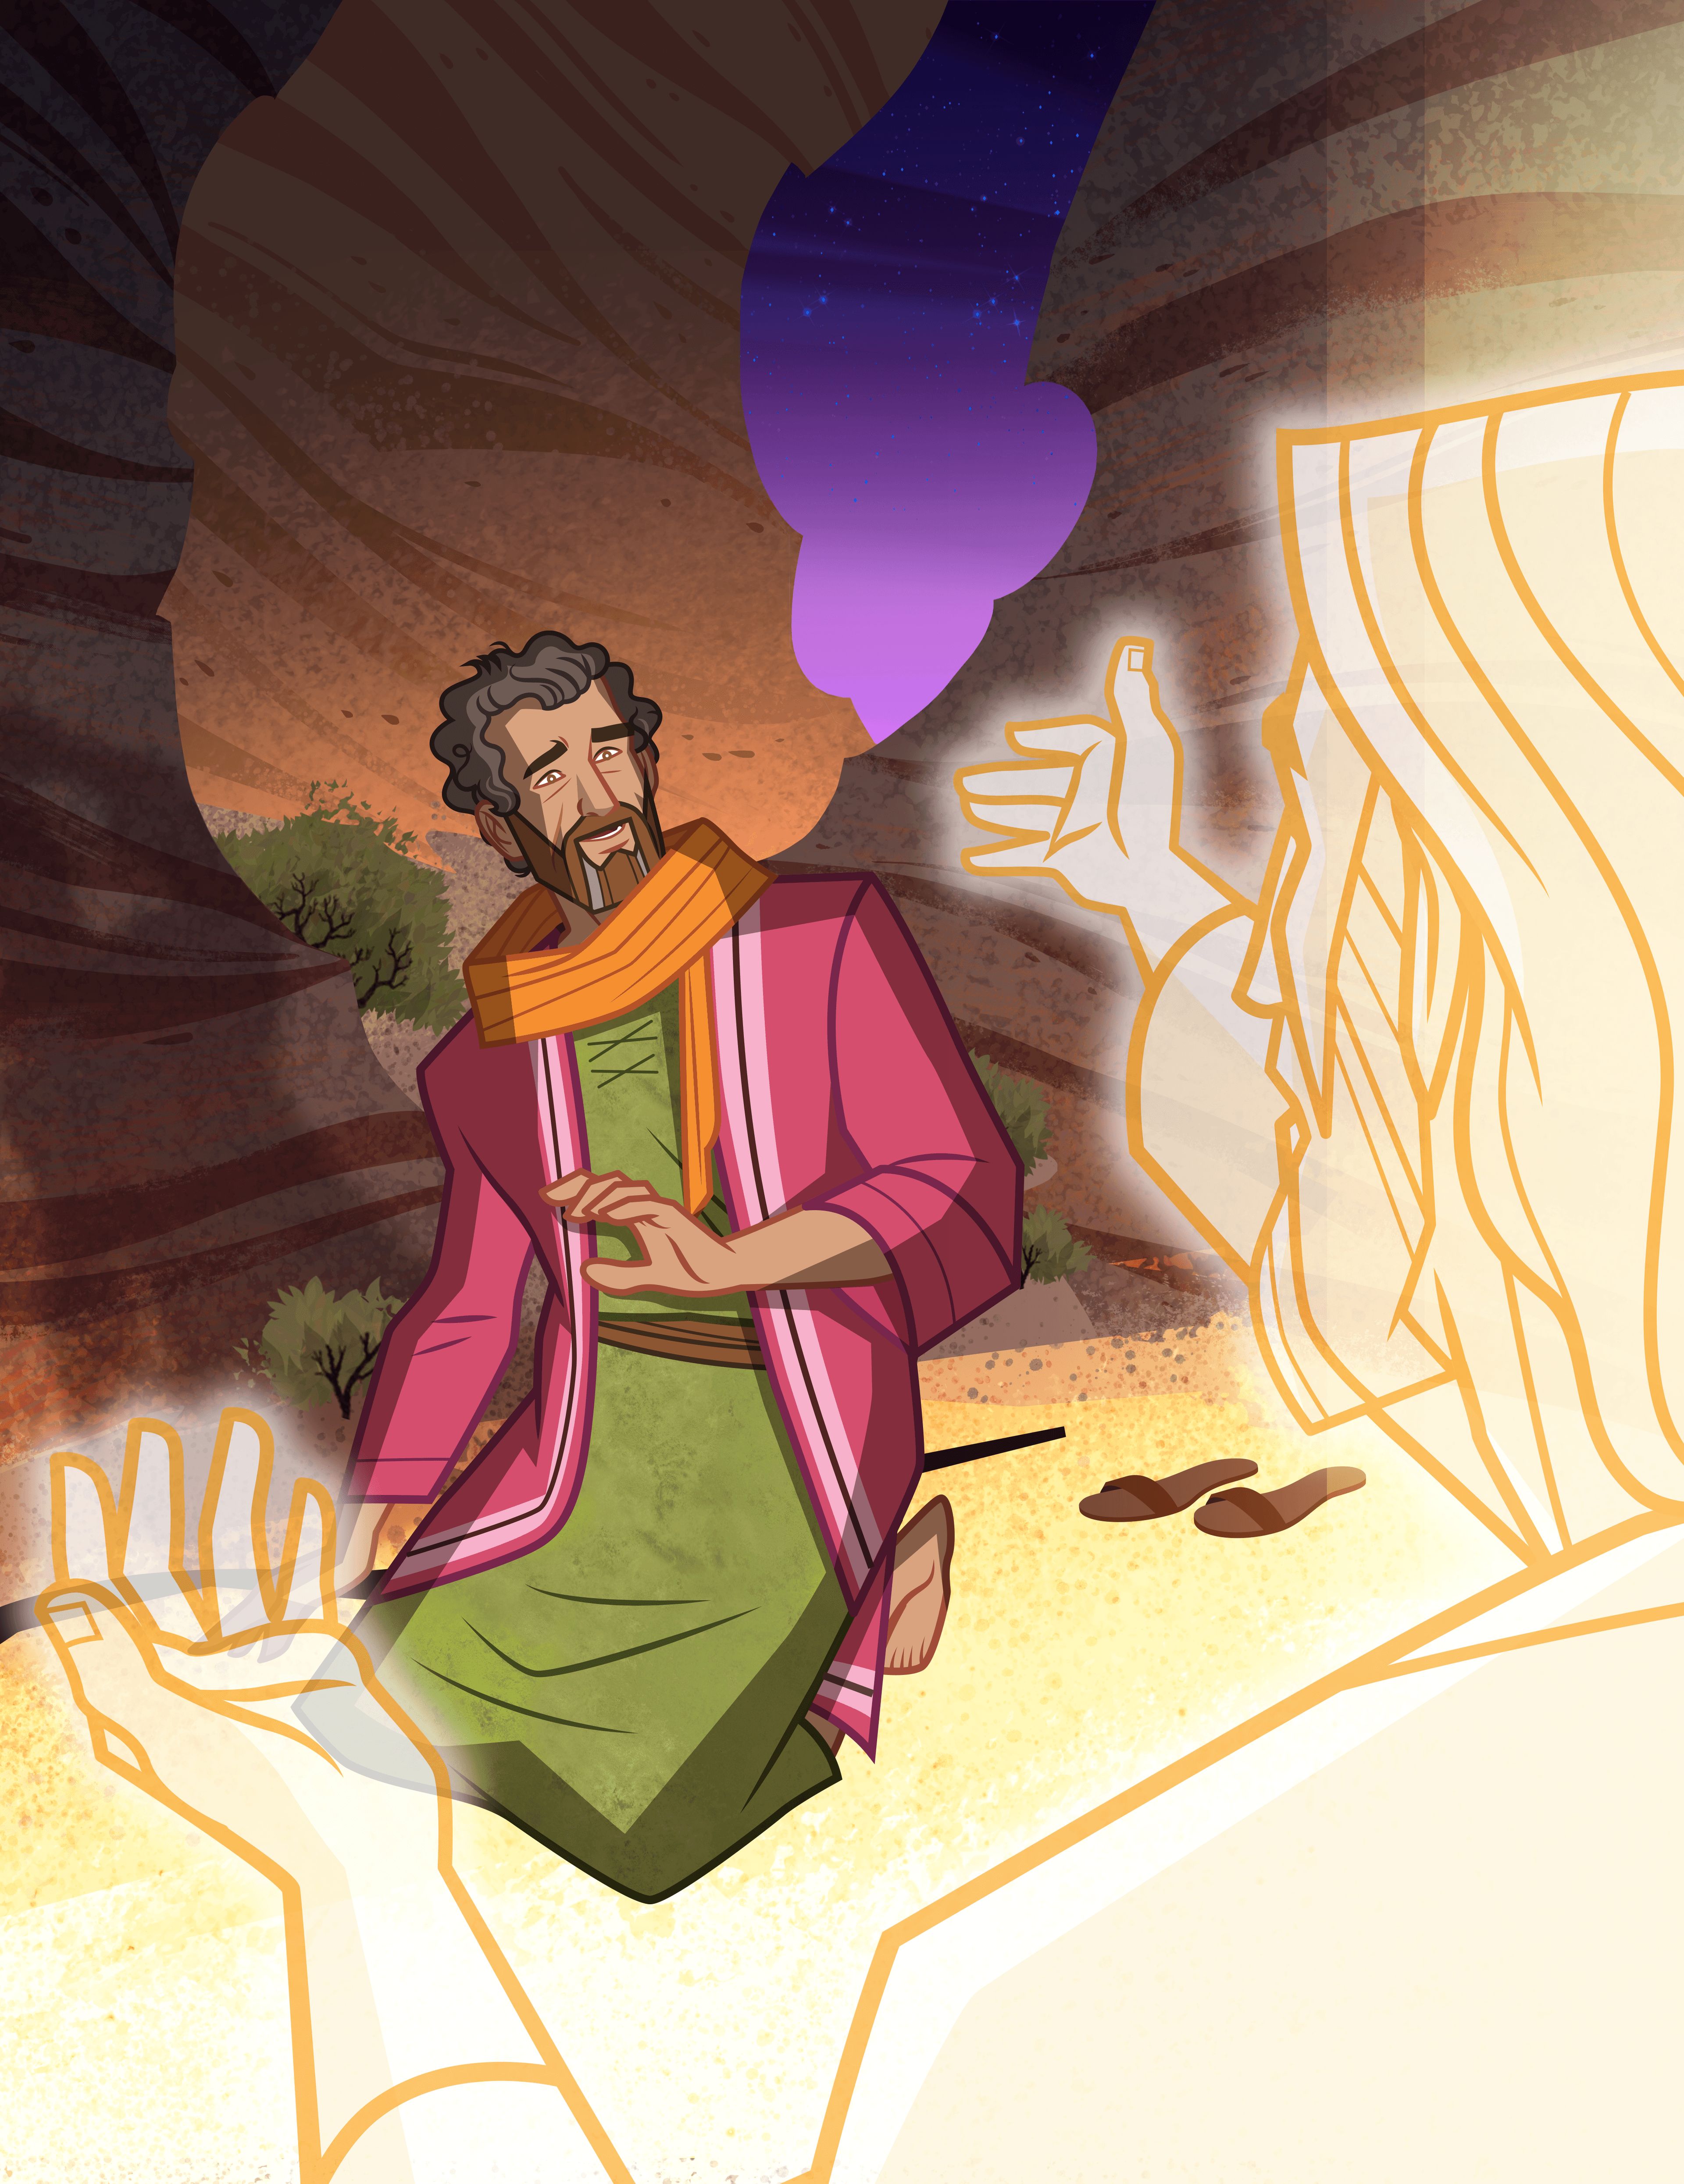 Иллюстрация на обложке книги «Истории из Священных Писаний: Ветхий Завет». На ней изображено, как Иегова является Моисею на горе Синай.